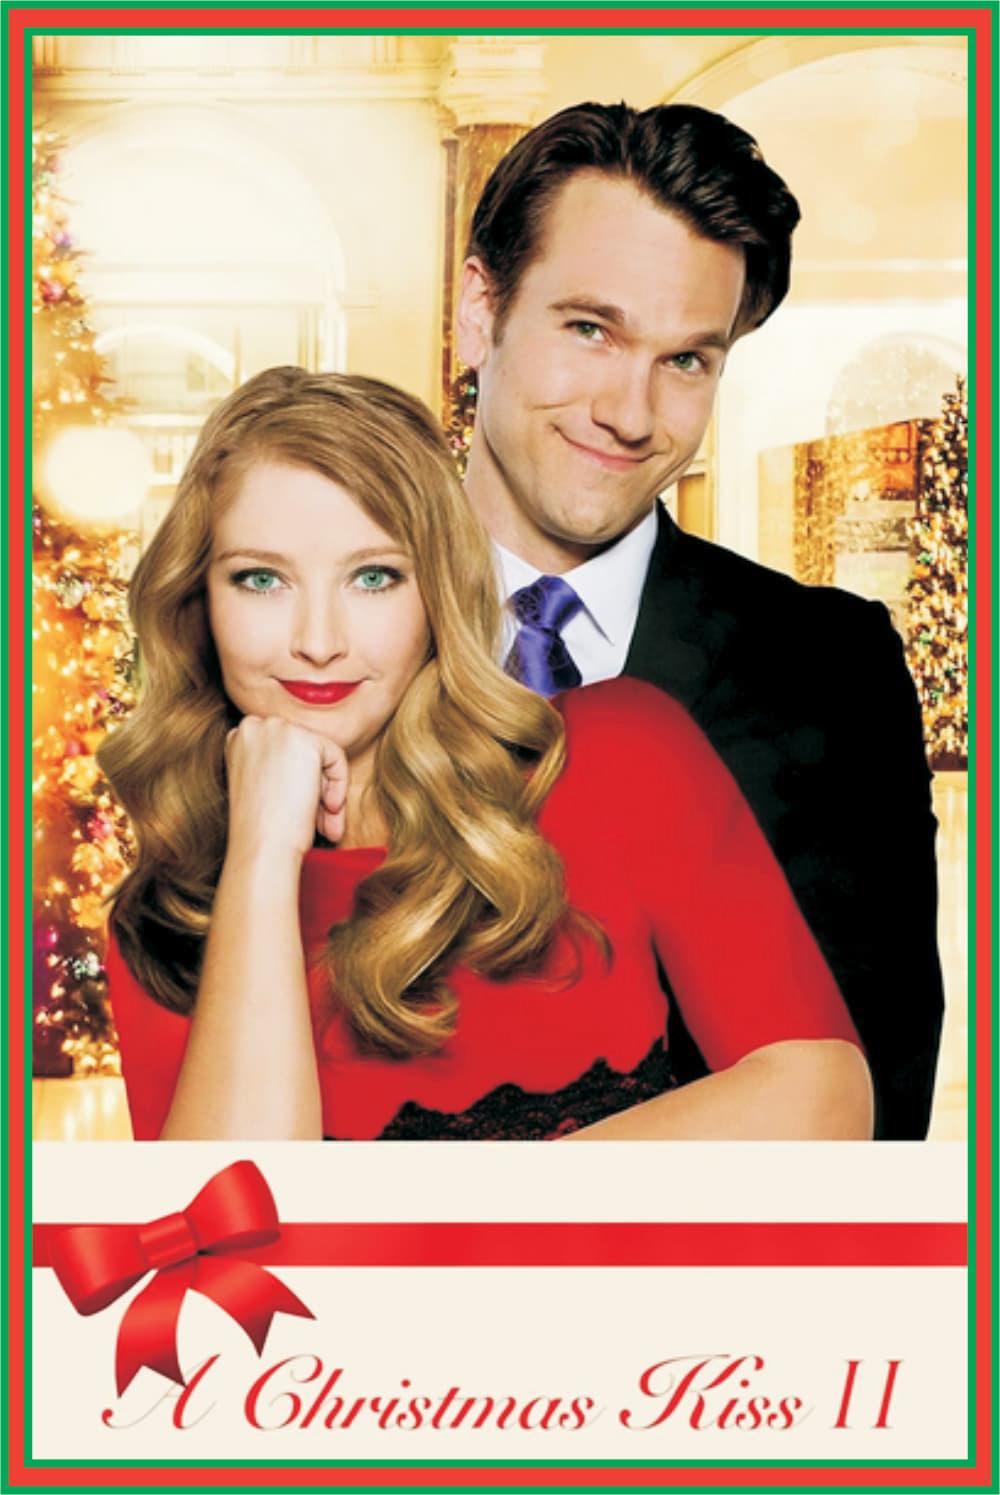 A Christmas Kiss II poster